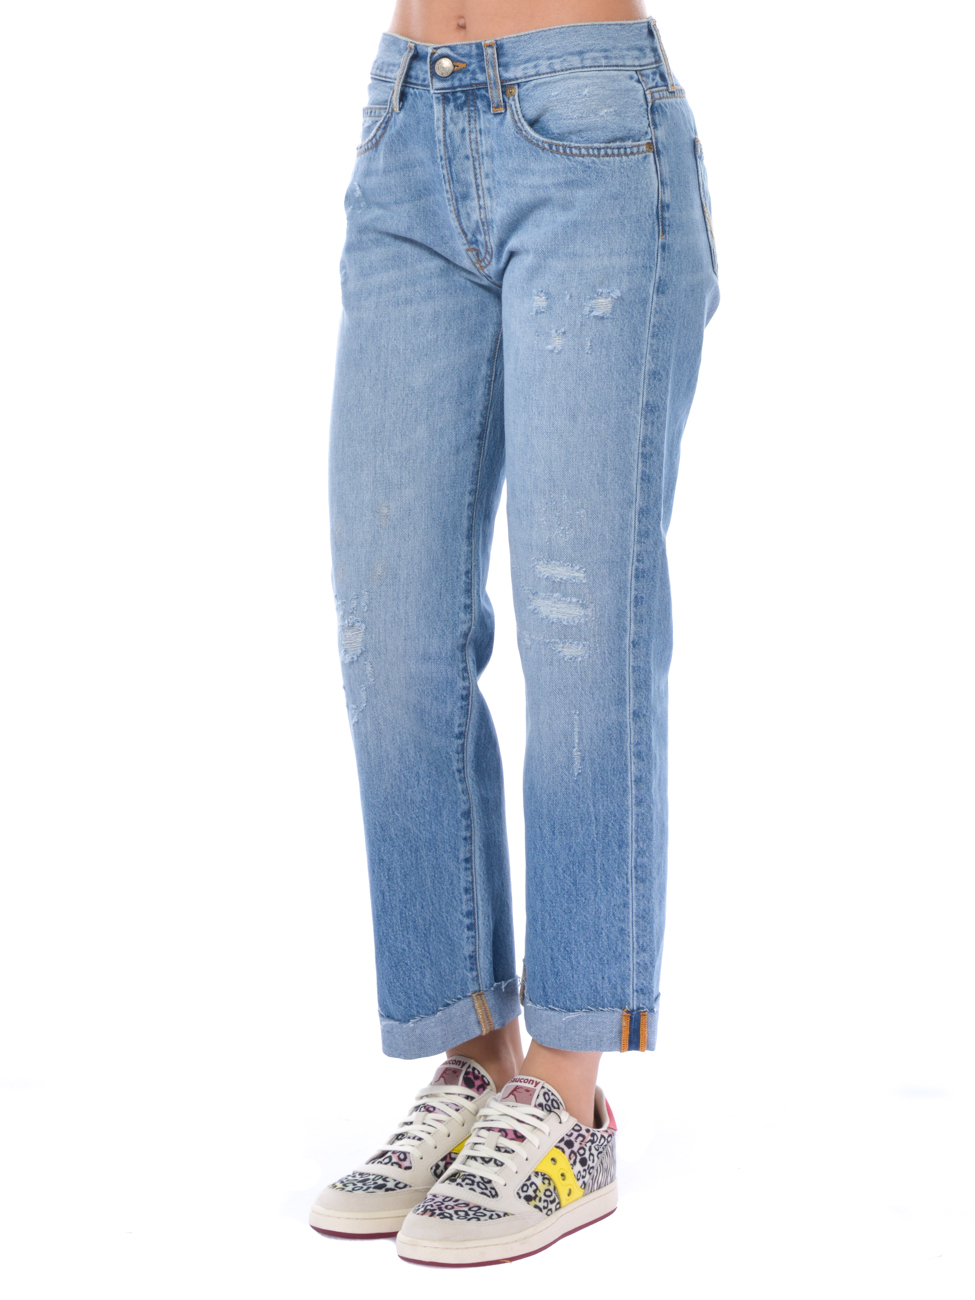 jeans da donna Roy Roger's cinque tasche con rotture